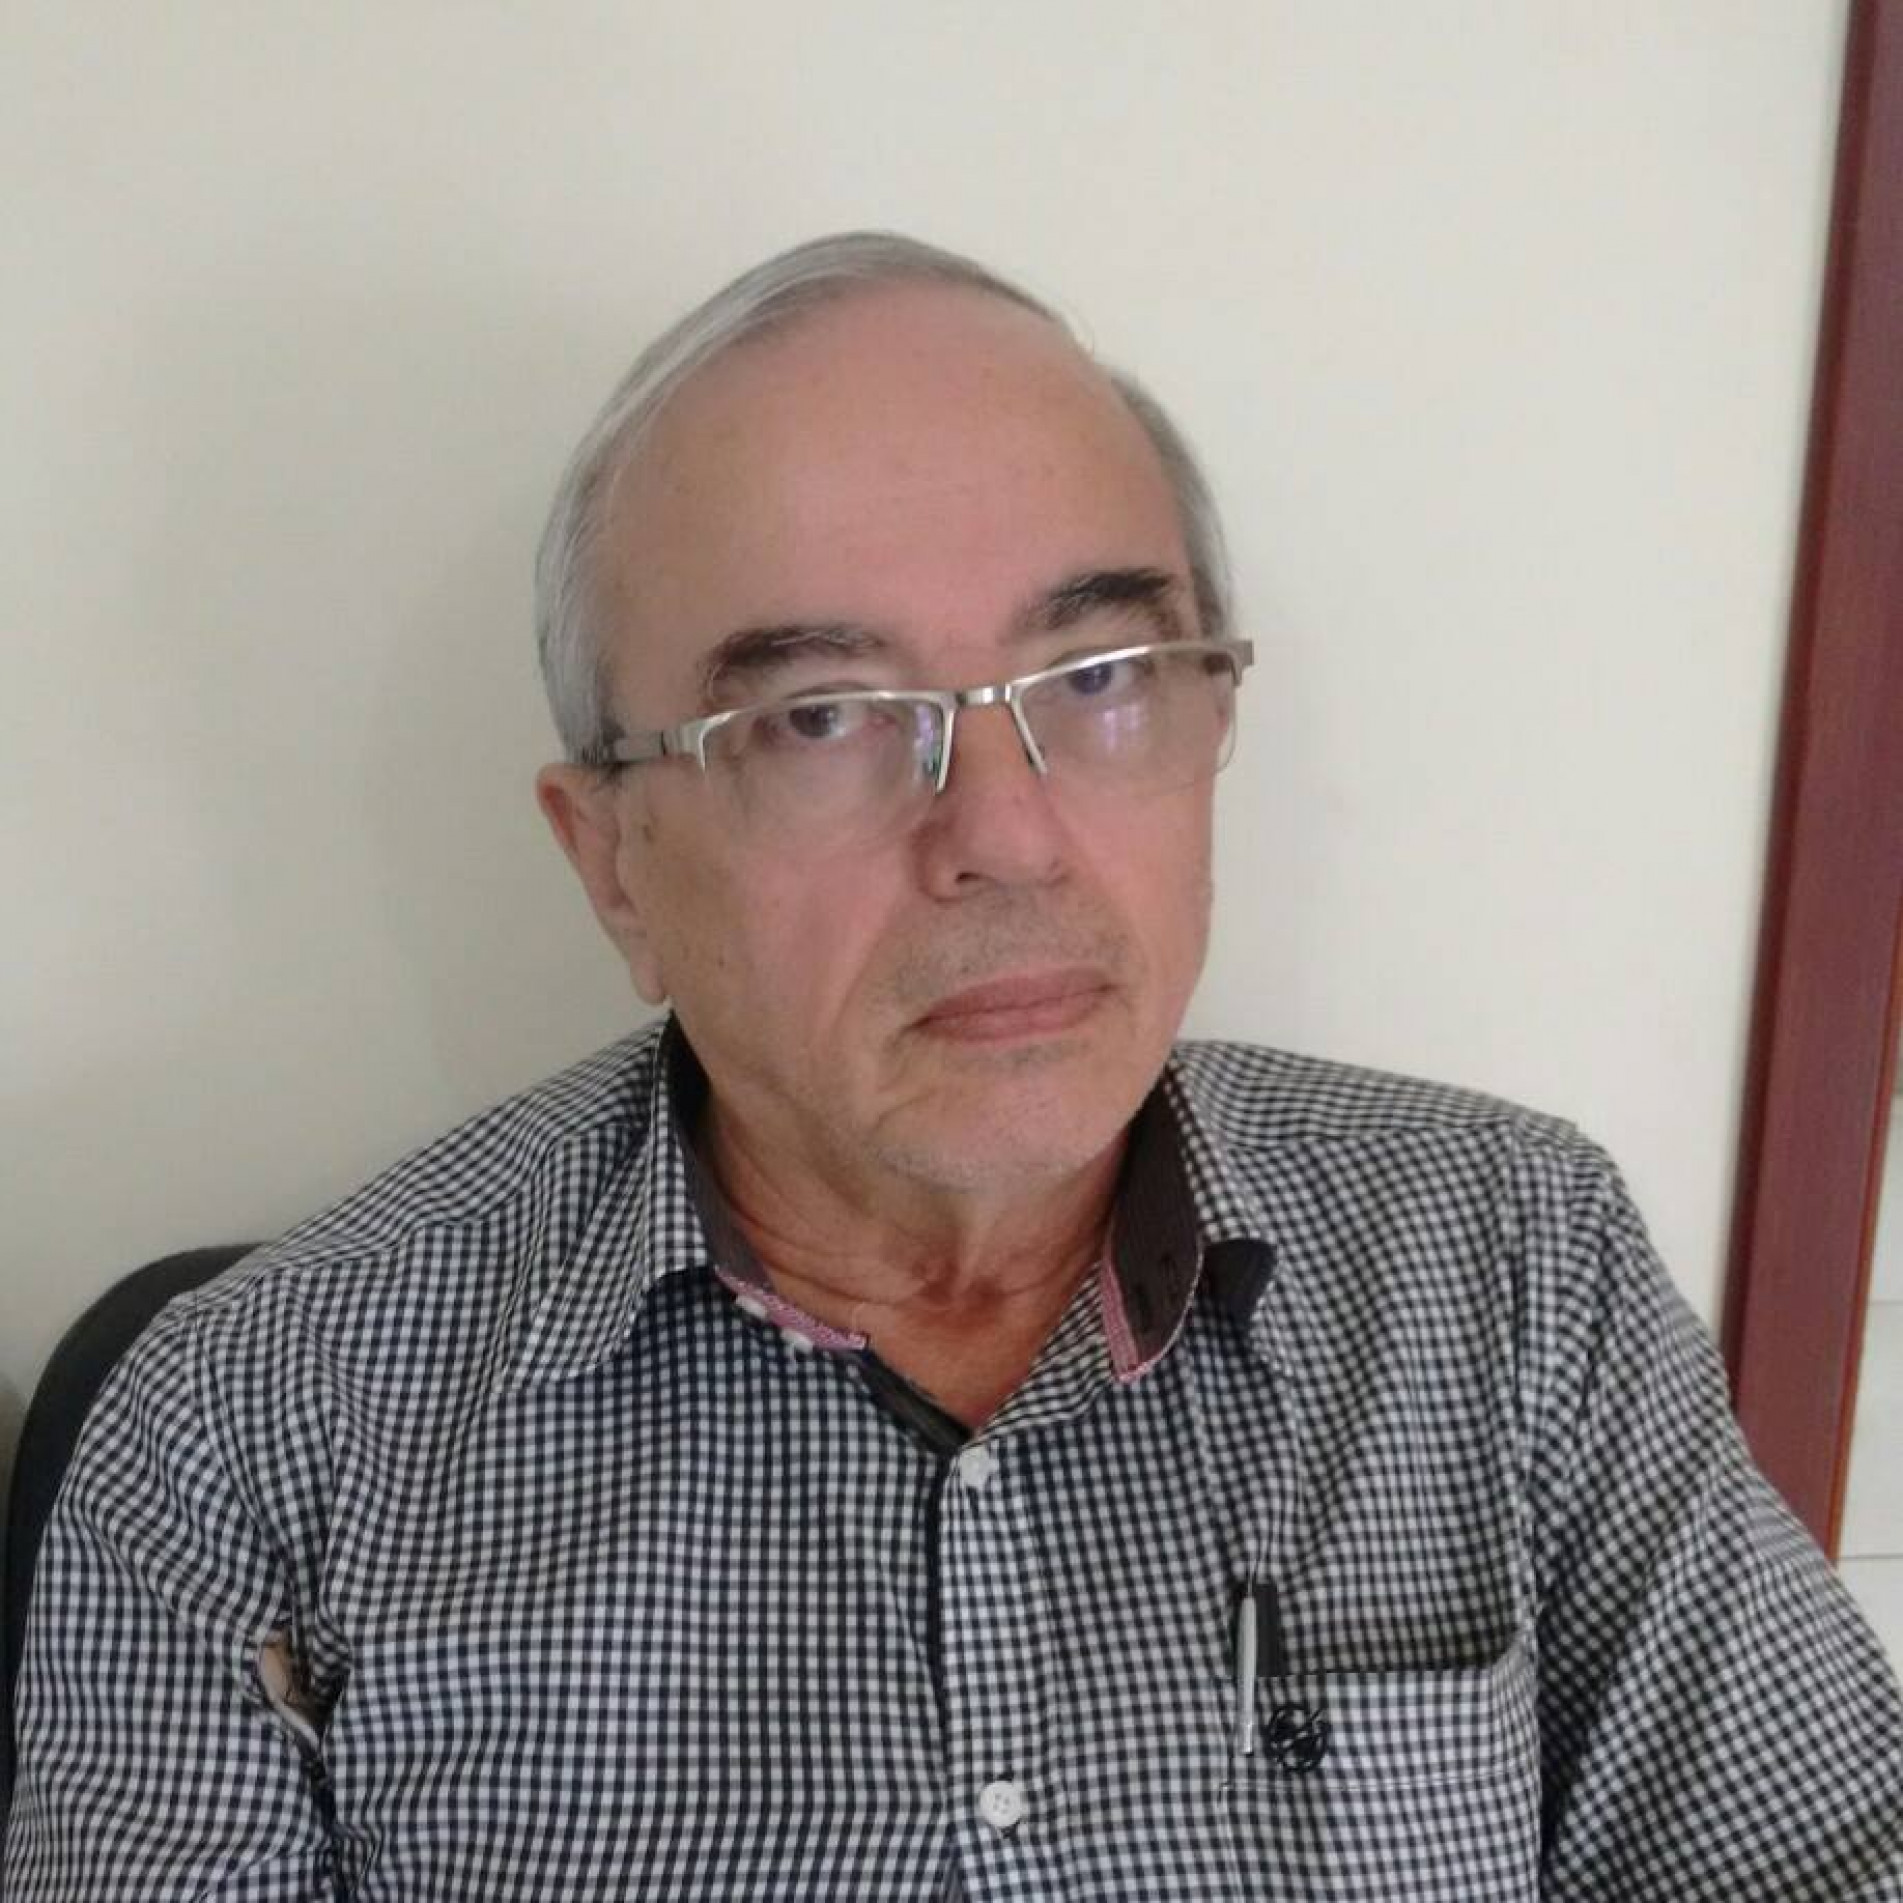 Morre o radialista Nilton Peres Clemente, aos 73 anos